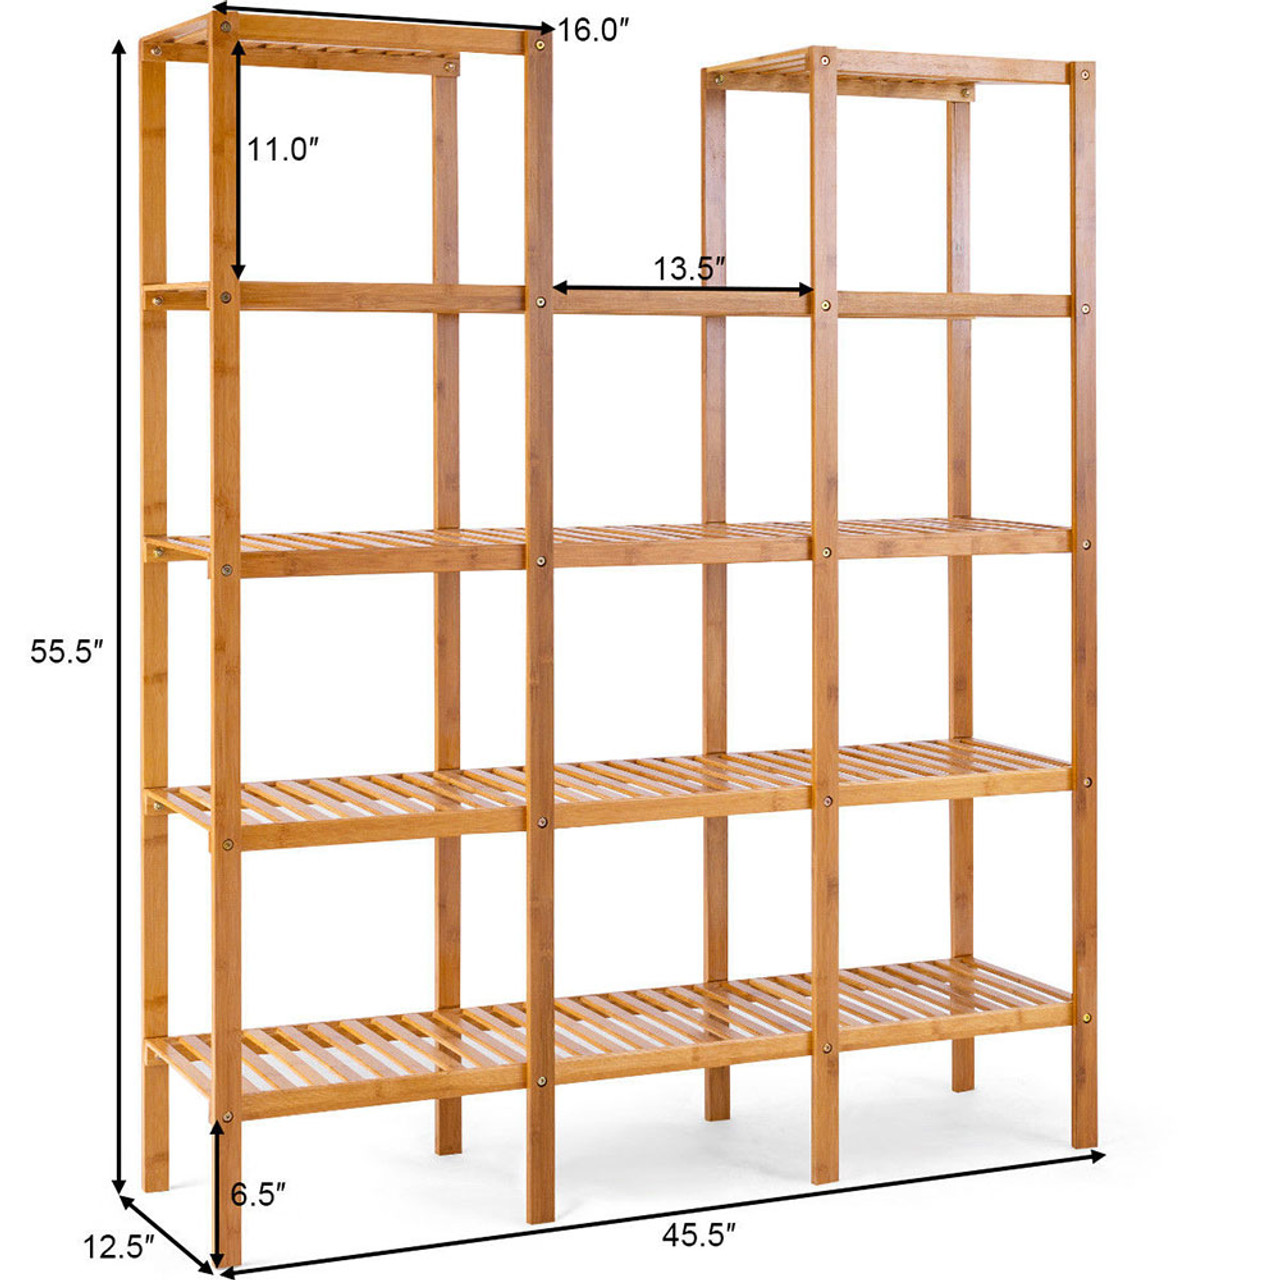 Multifunctional 5-Tier Bamboo Display Shelf product image